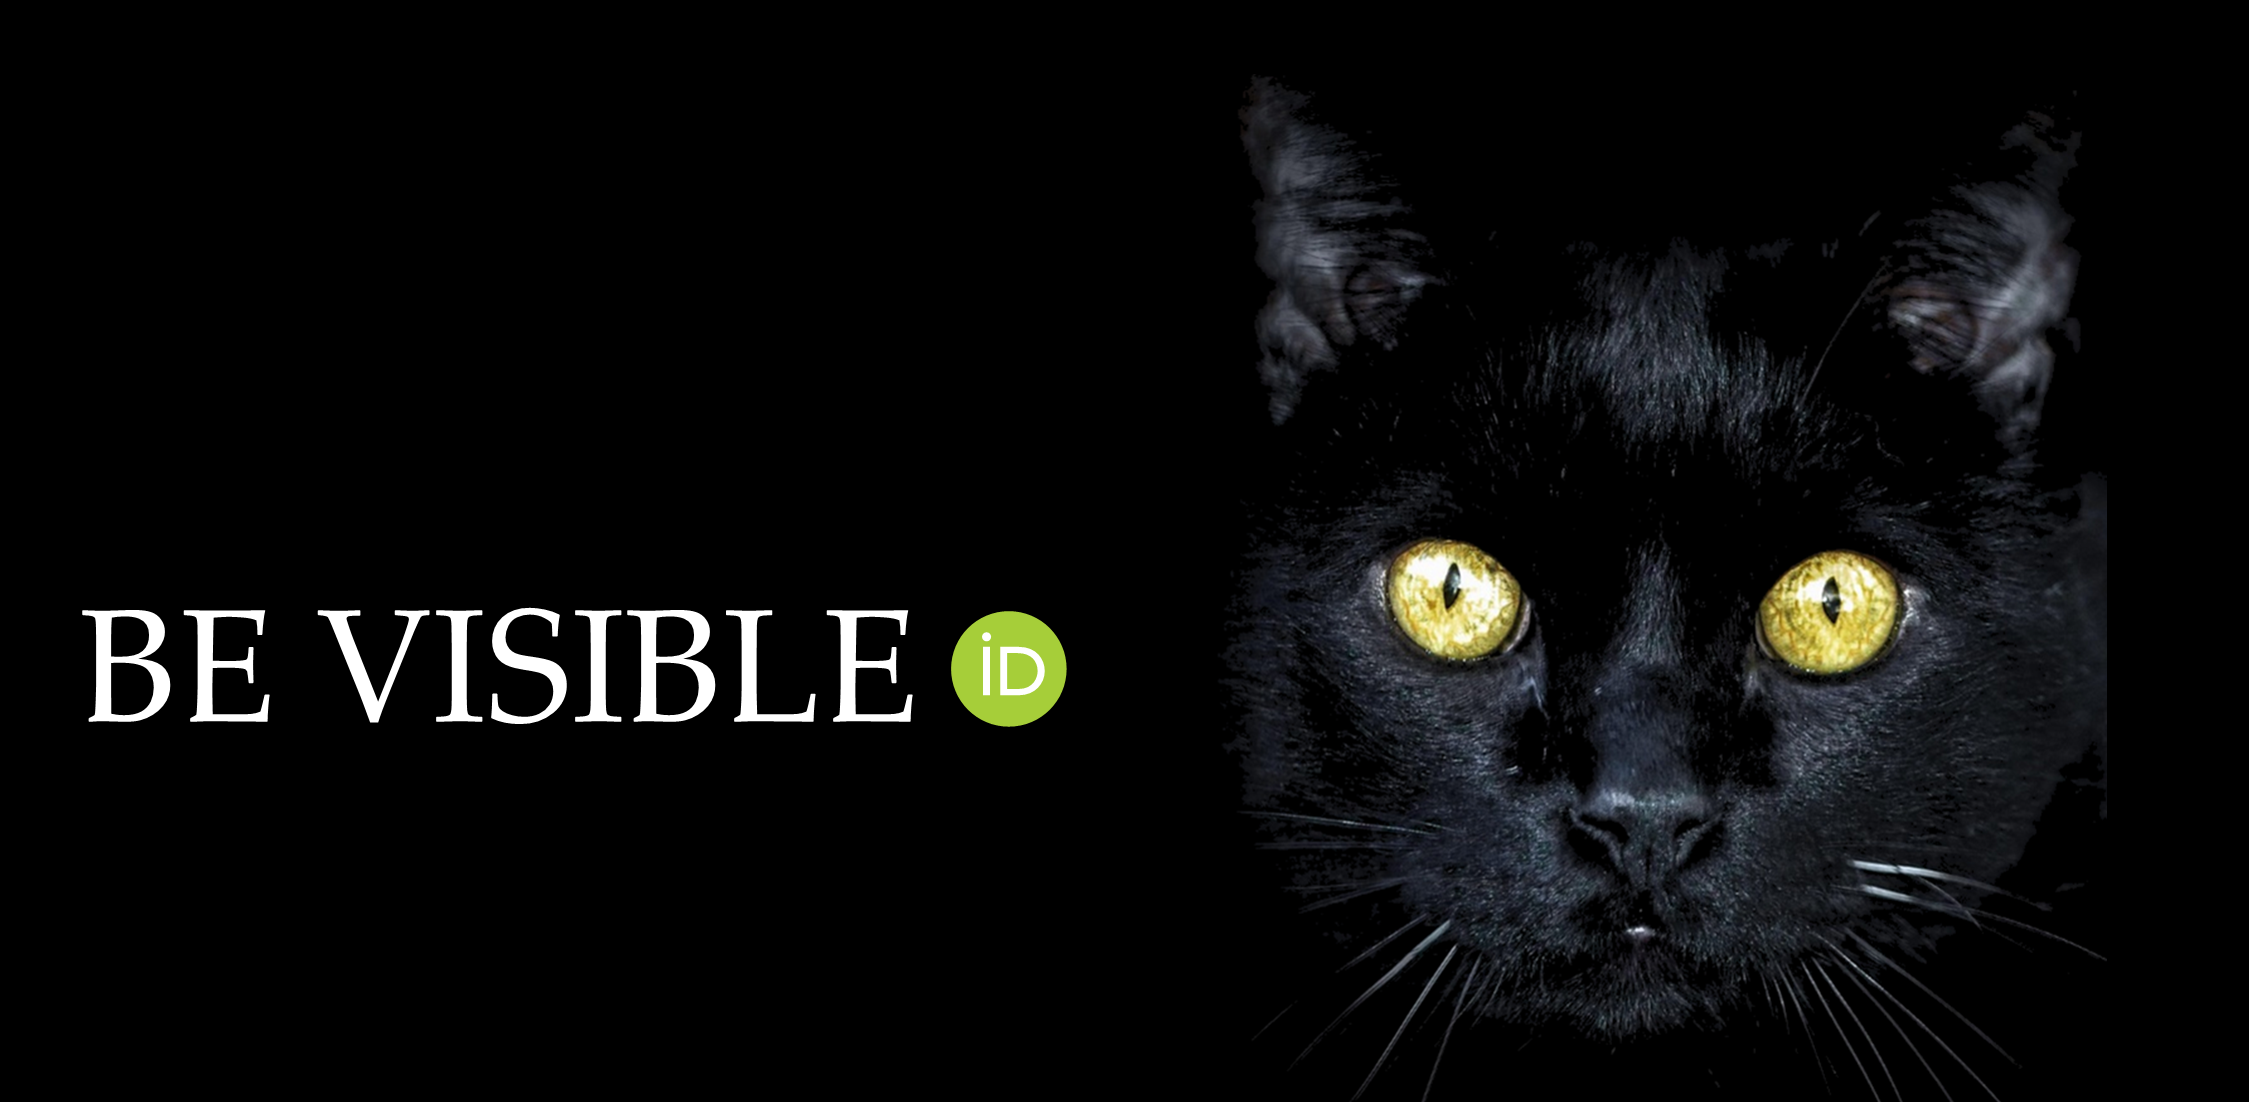 Schwarze Katze mit Slogan "be visible"